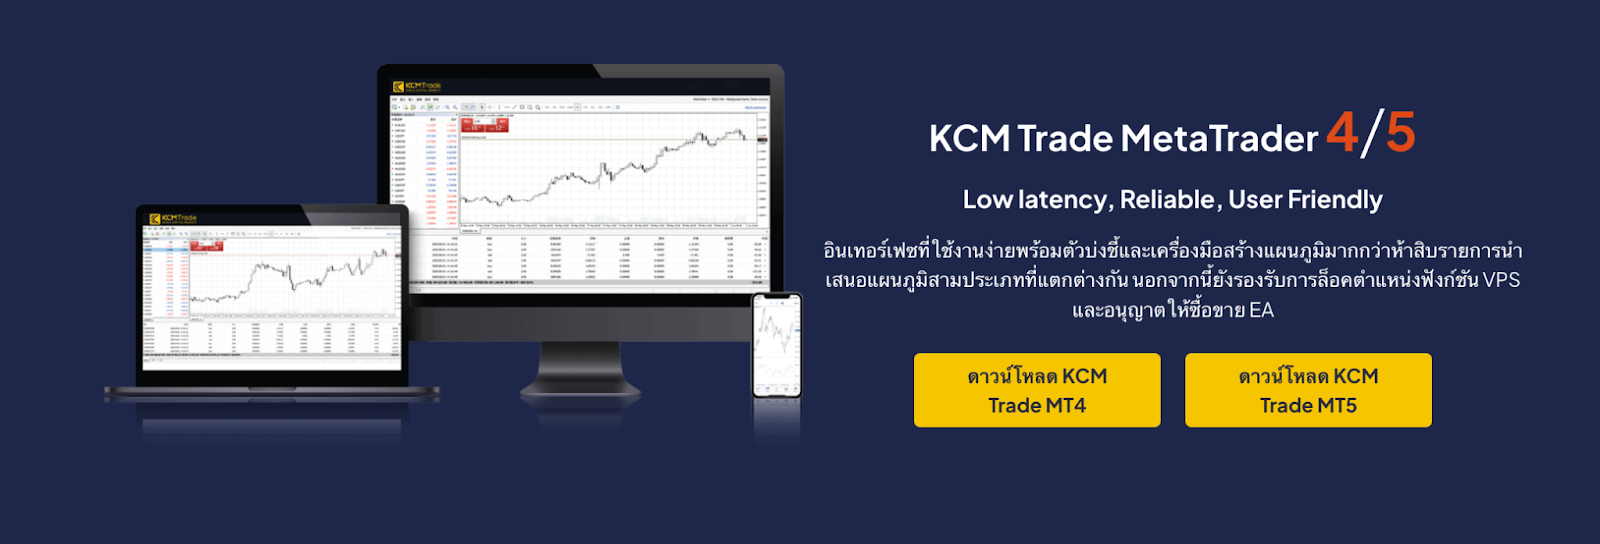 แพลตฟอร์มการเทรด KCM Trade